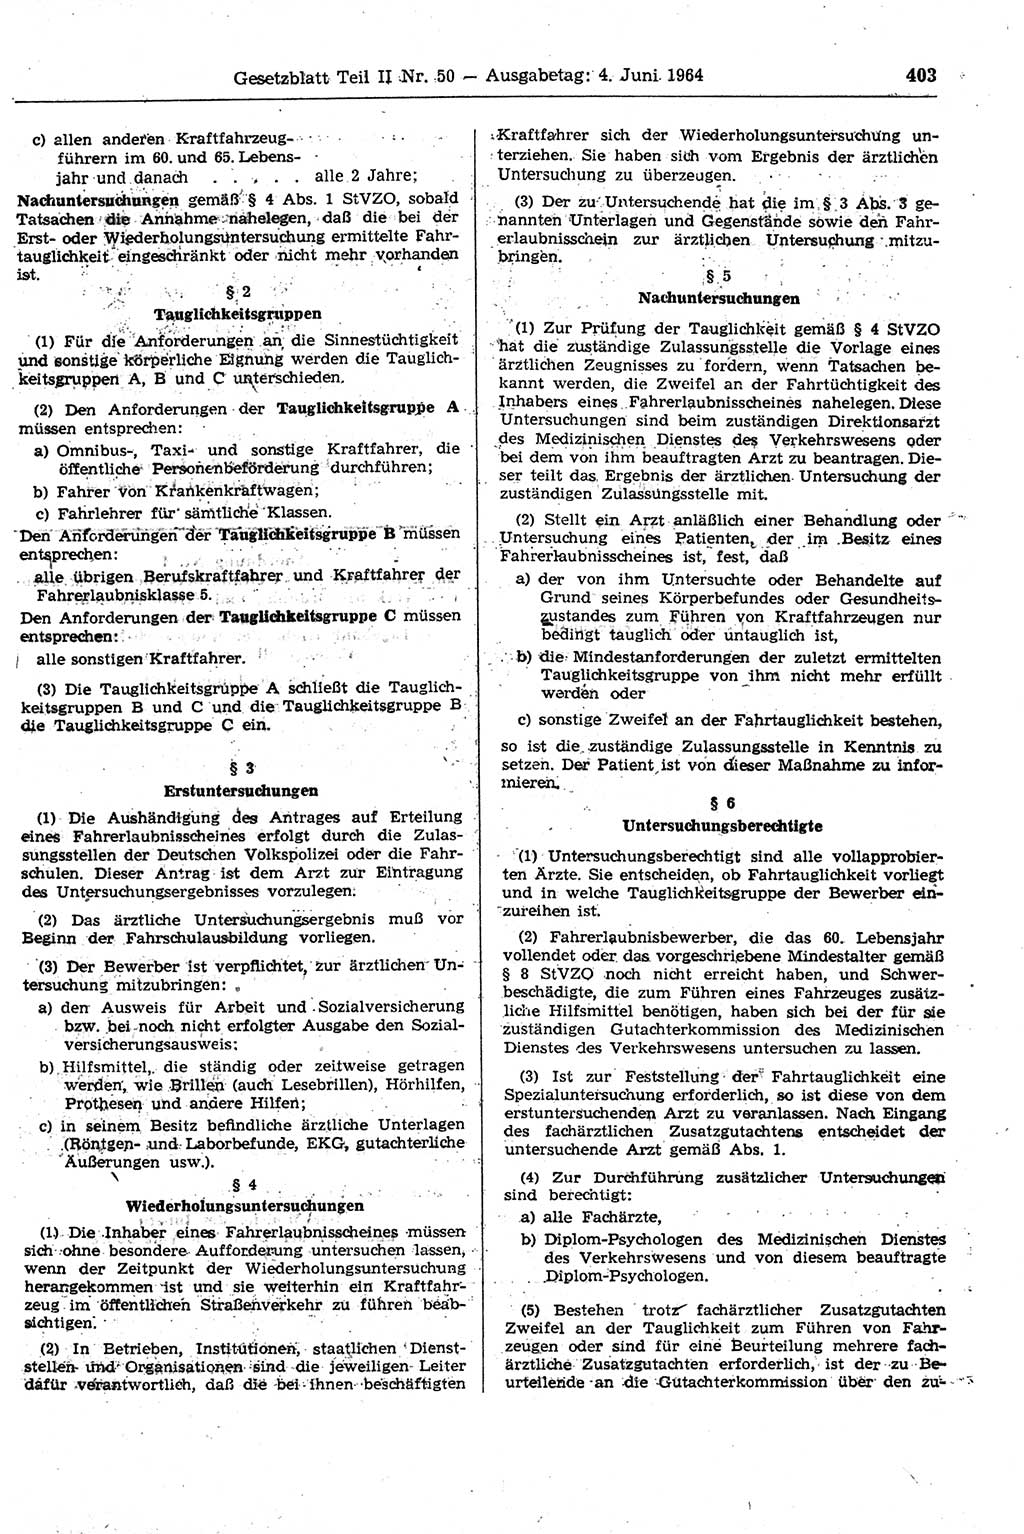 Gesetzblatt (GBl.) der Deutschen Demokratischen Republik (DDR) Teil ⅠⅠ 1964, Seite 403 (GBl. DDR ⅠⅠ 1964, S. 403)